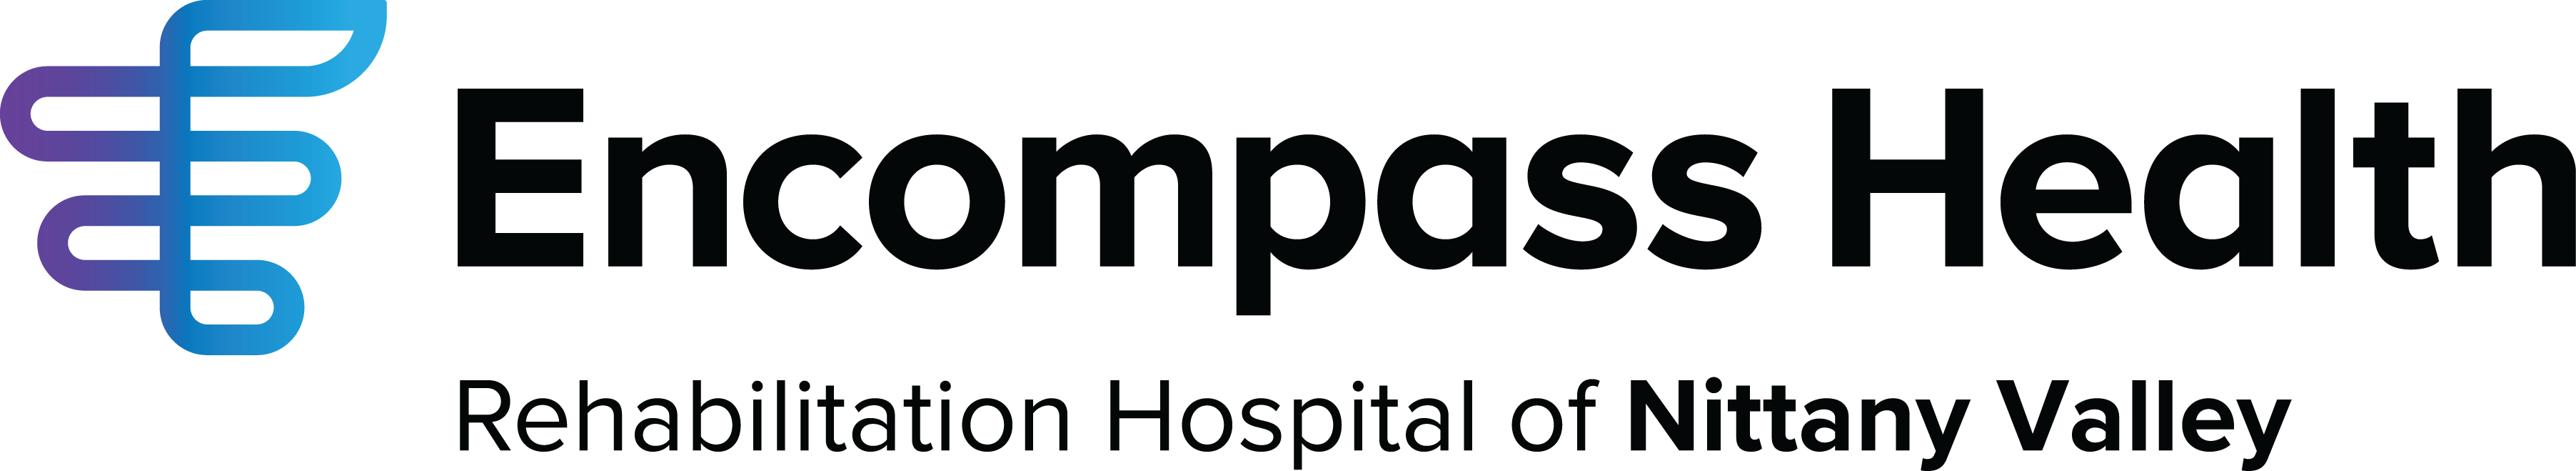 Encompass Health Rehabilitation Hospital of Nittany Valley